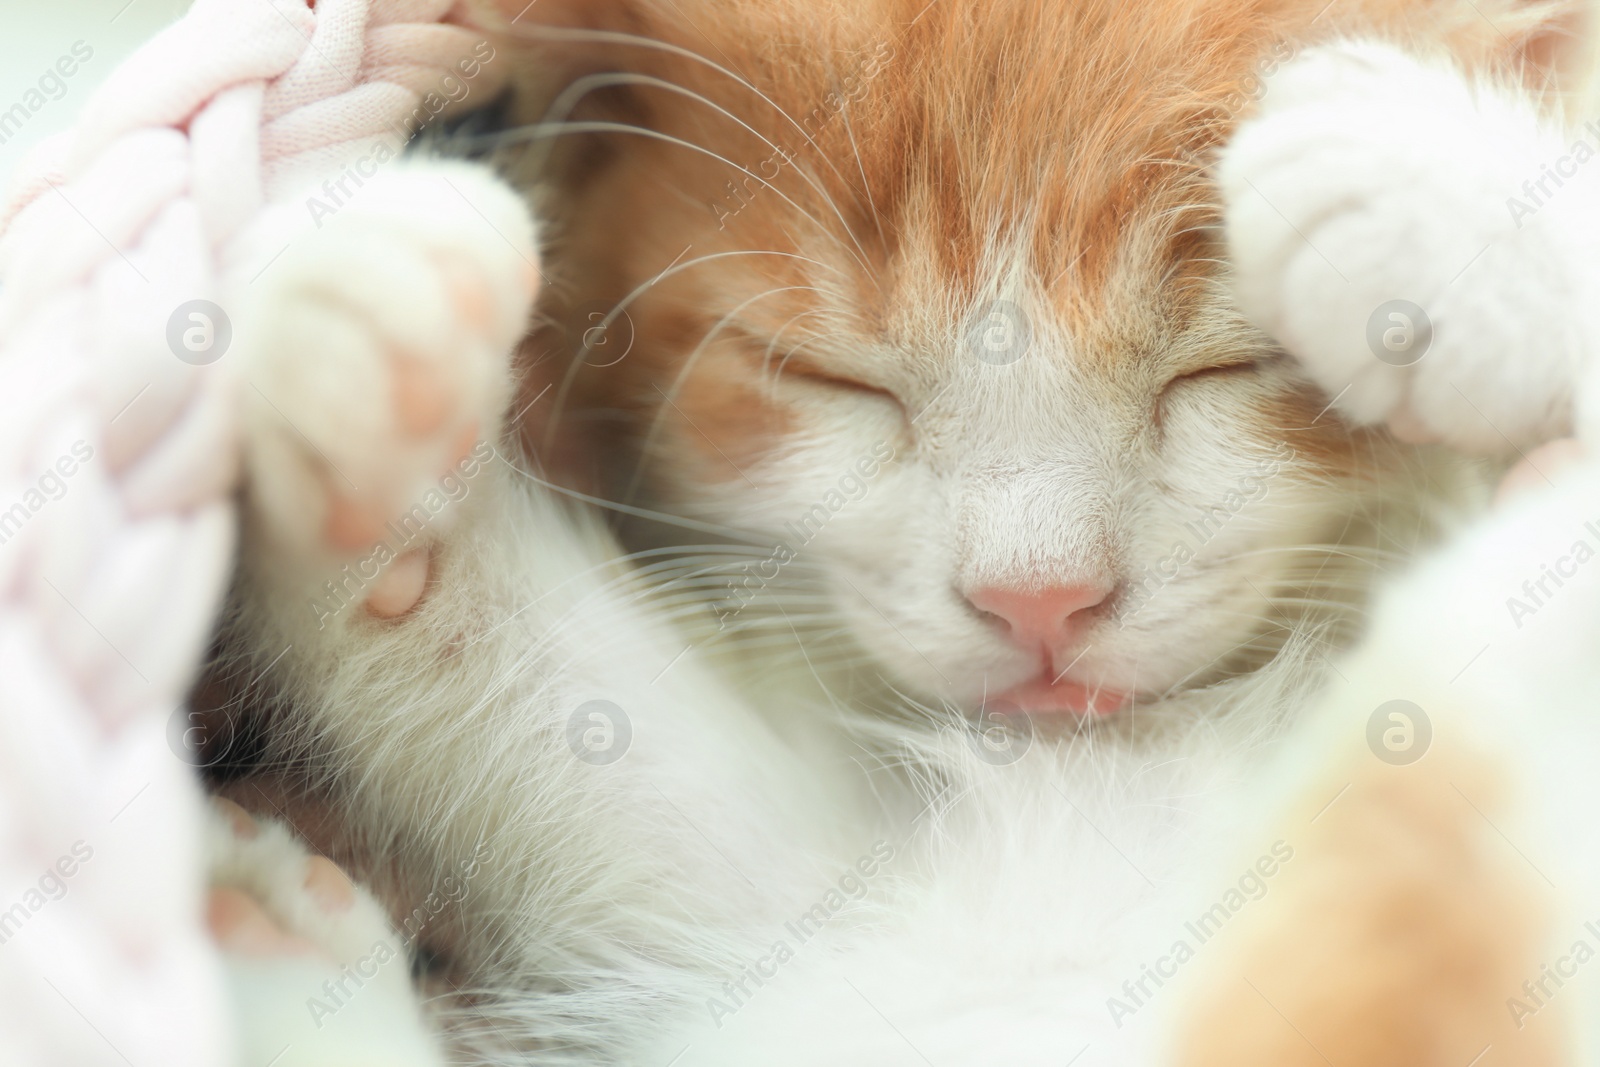 Photo of Cute little red kitten sleeping, closeup view